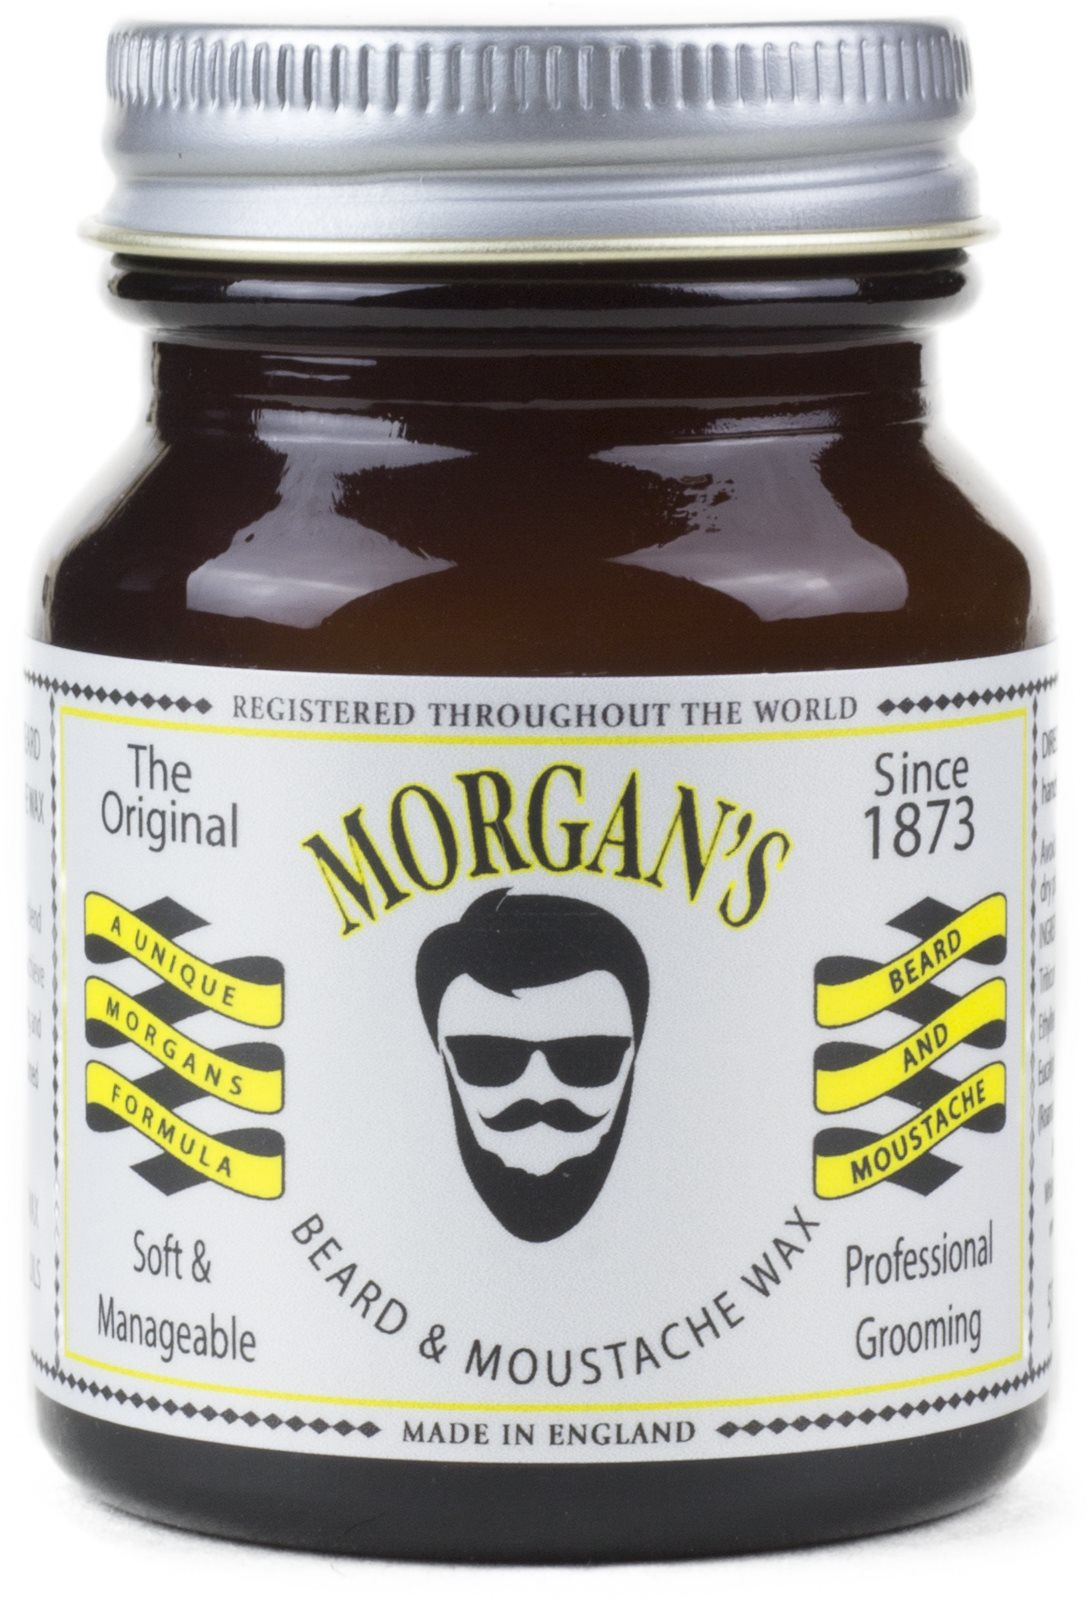 Szakállápoló viasz MORGAN'S Moustache and Beard Wax 50 g